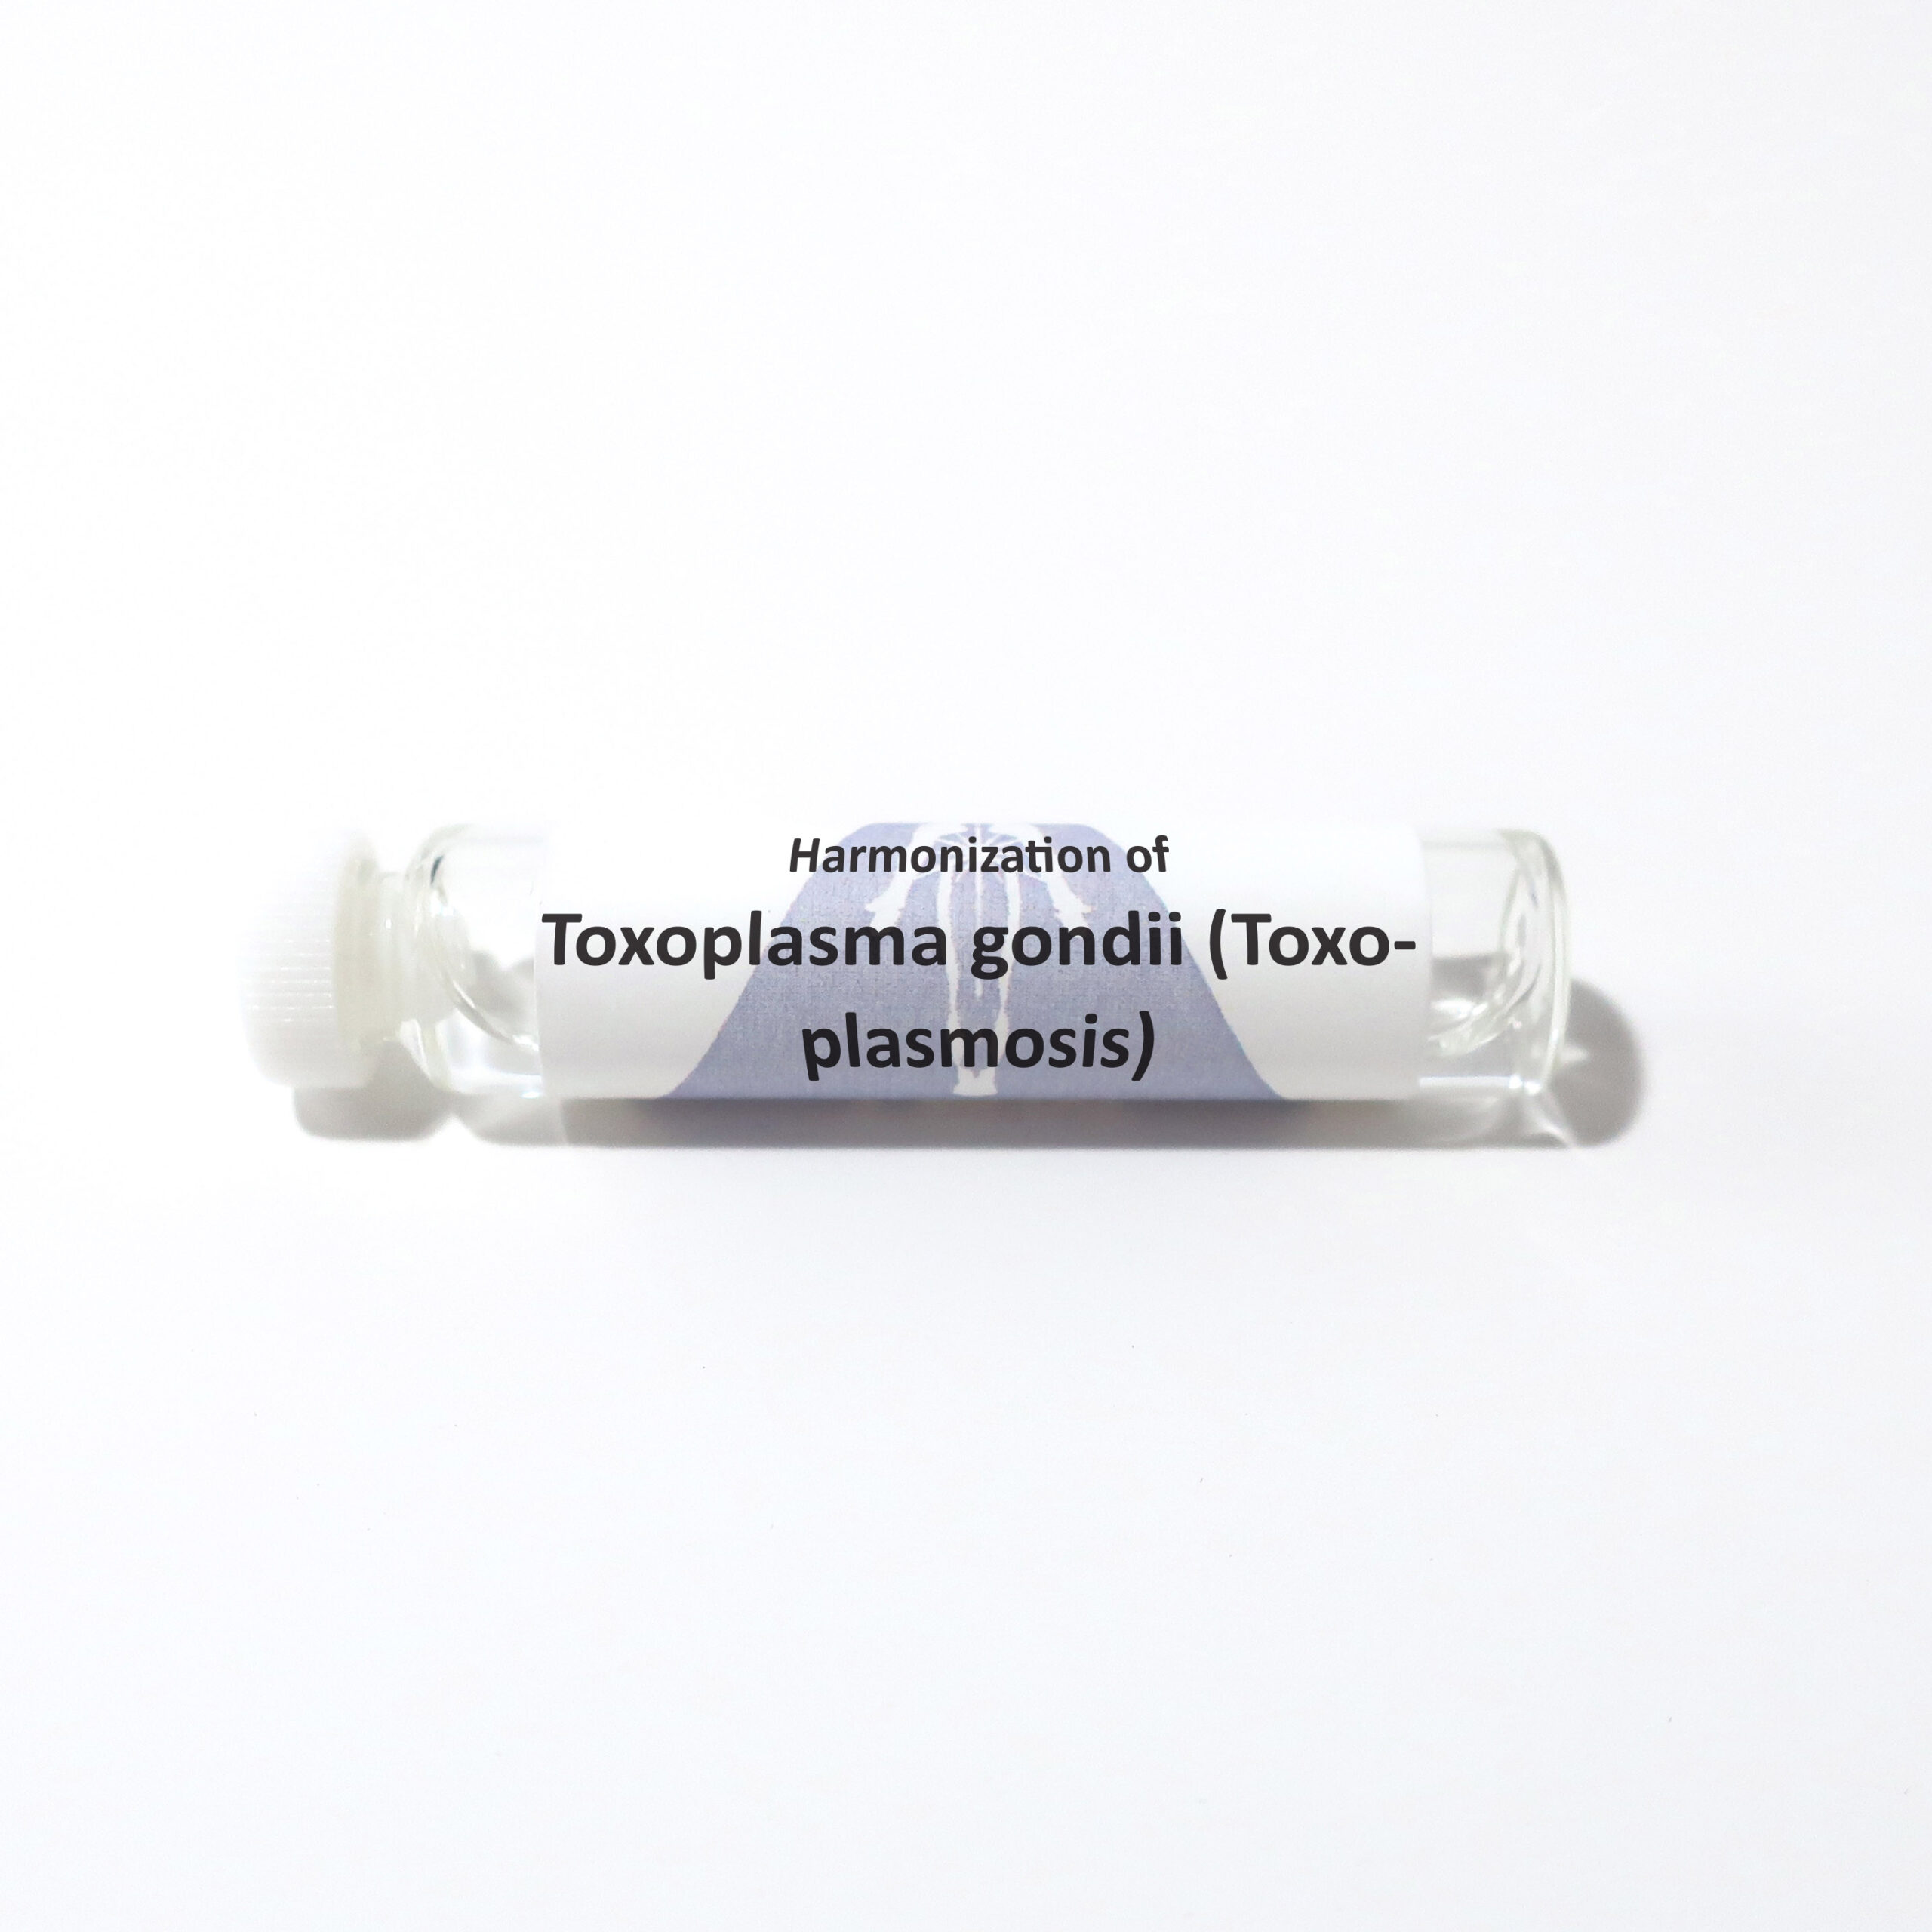 Toxoplasma gondii (Toxoplasmosis)